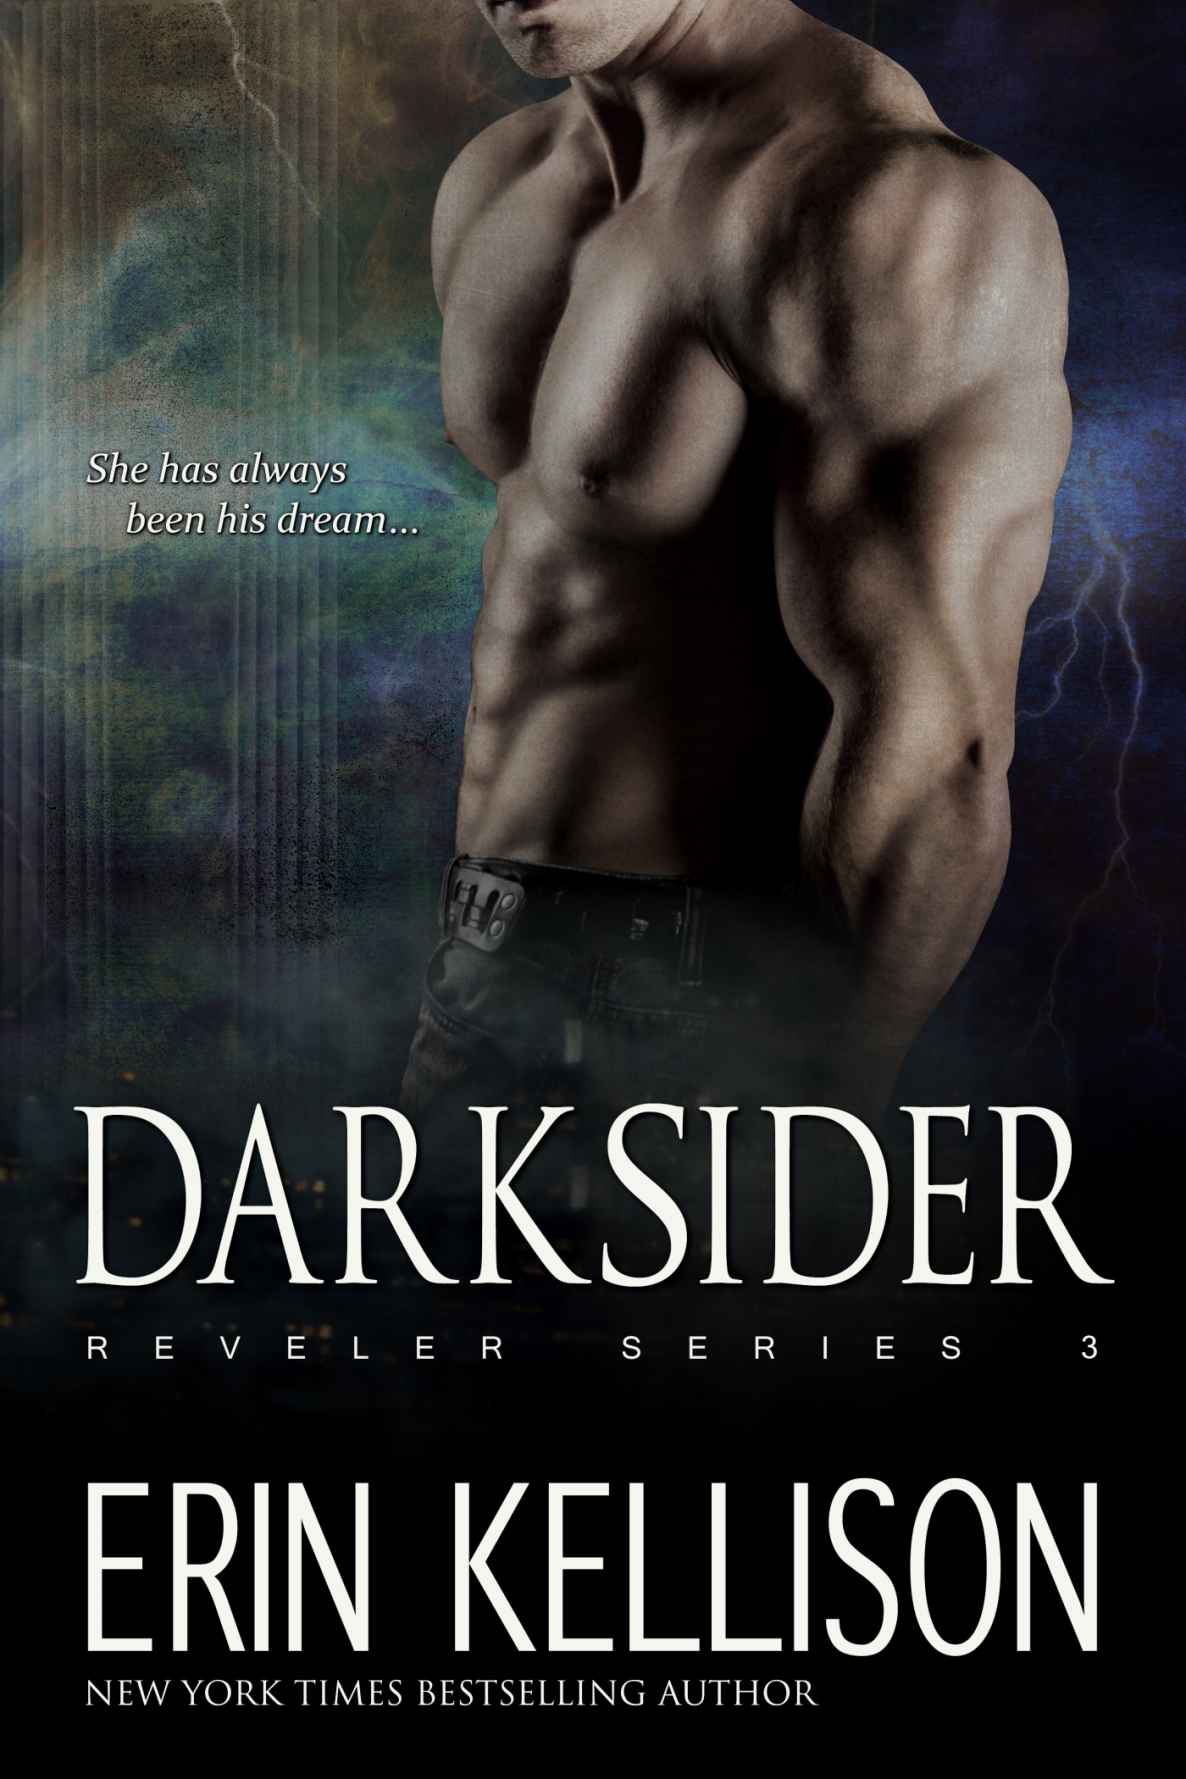 Darksider: Reveler Series 3